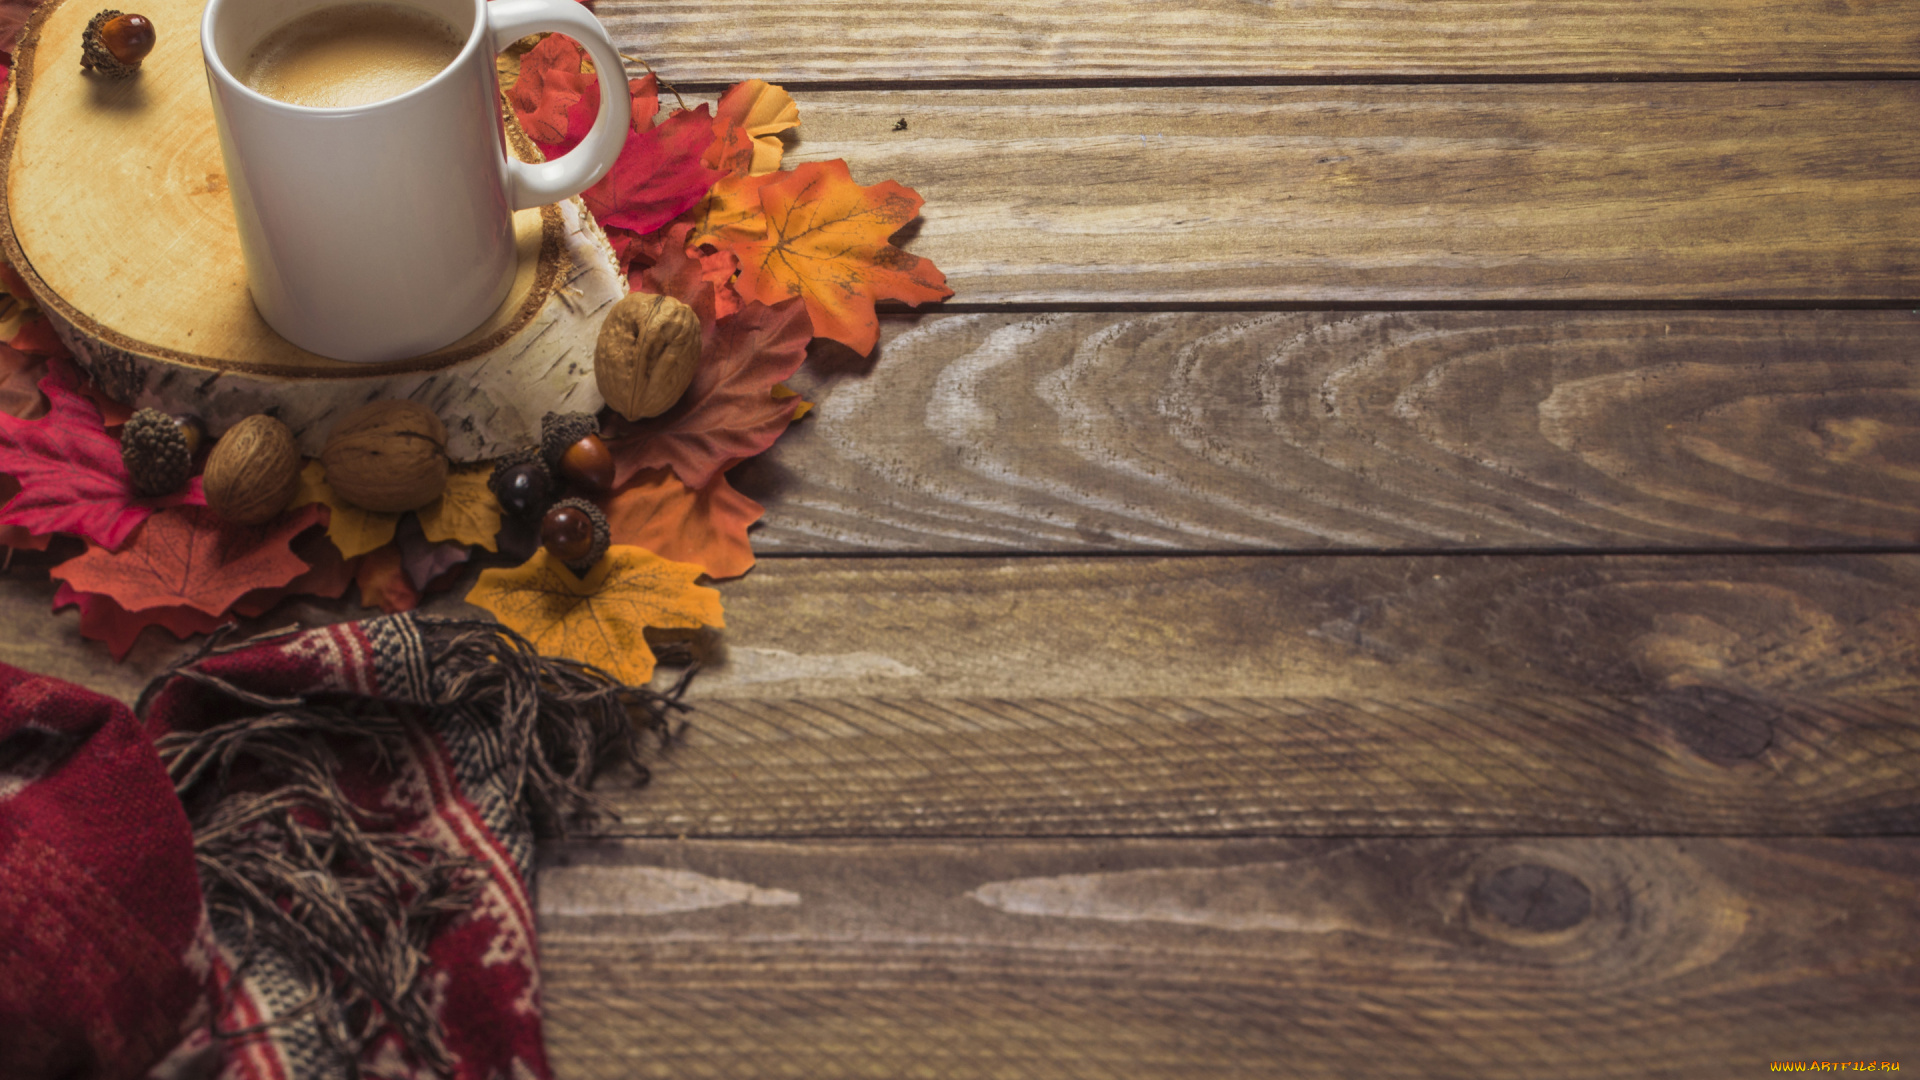 еда, кофе, , кофейные, зёрна, background, wood, чашка, шарф, colorful, дерево, фон, листья, осень, maple, осенние, coffee, cup, leaves, autumn